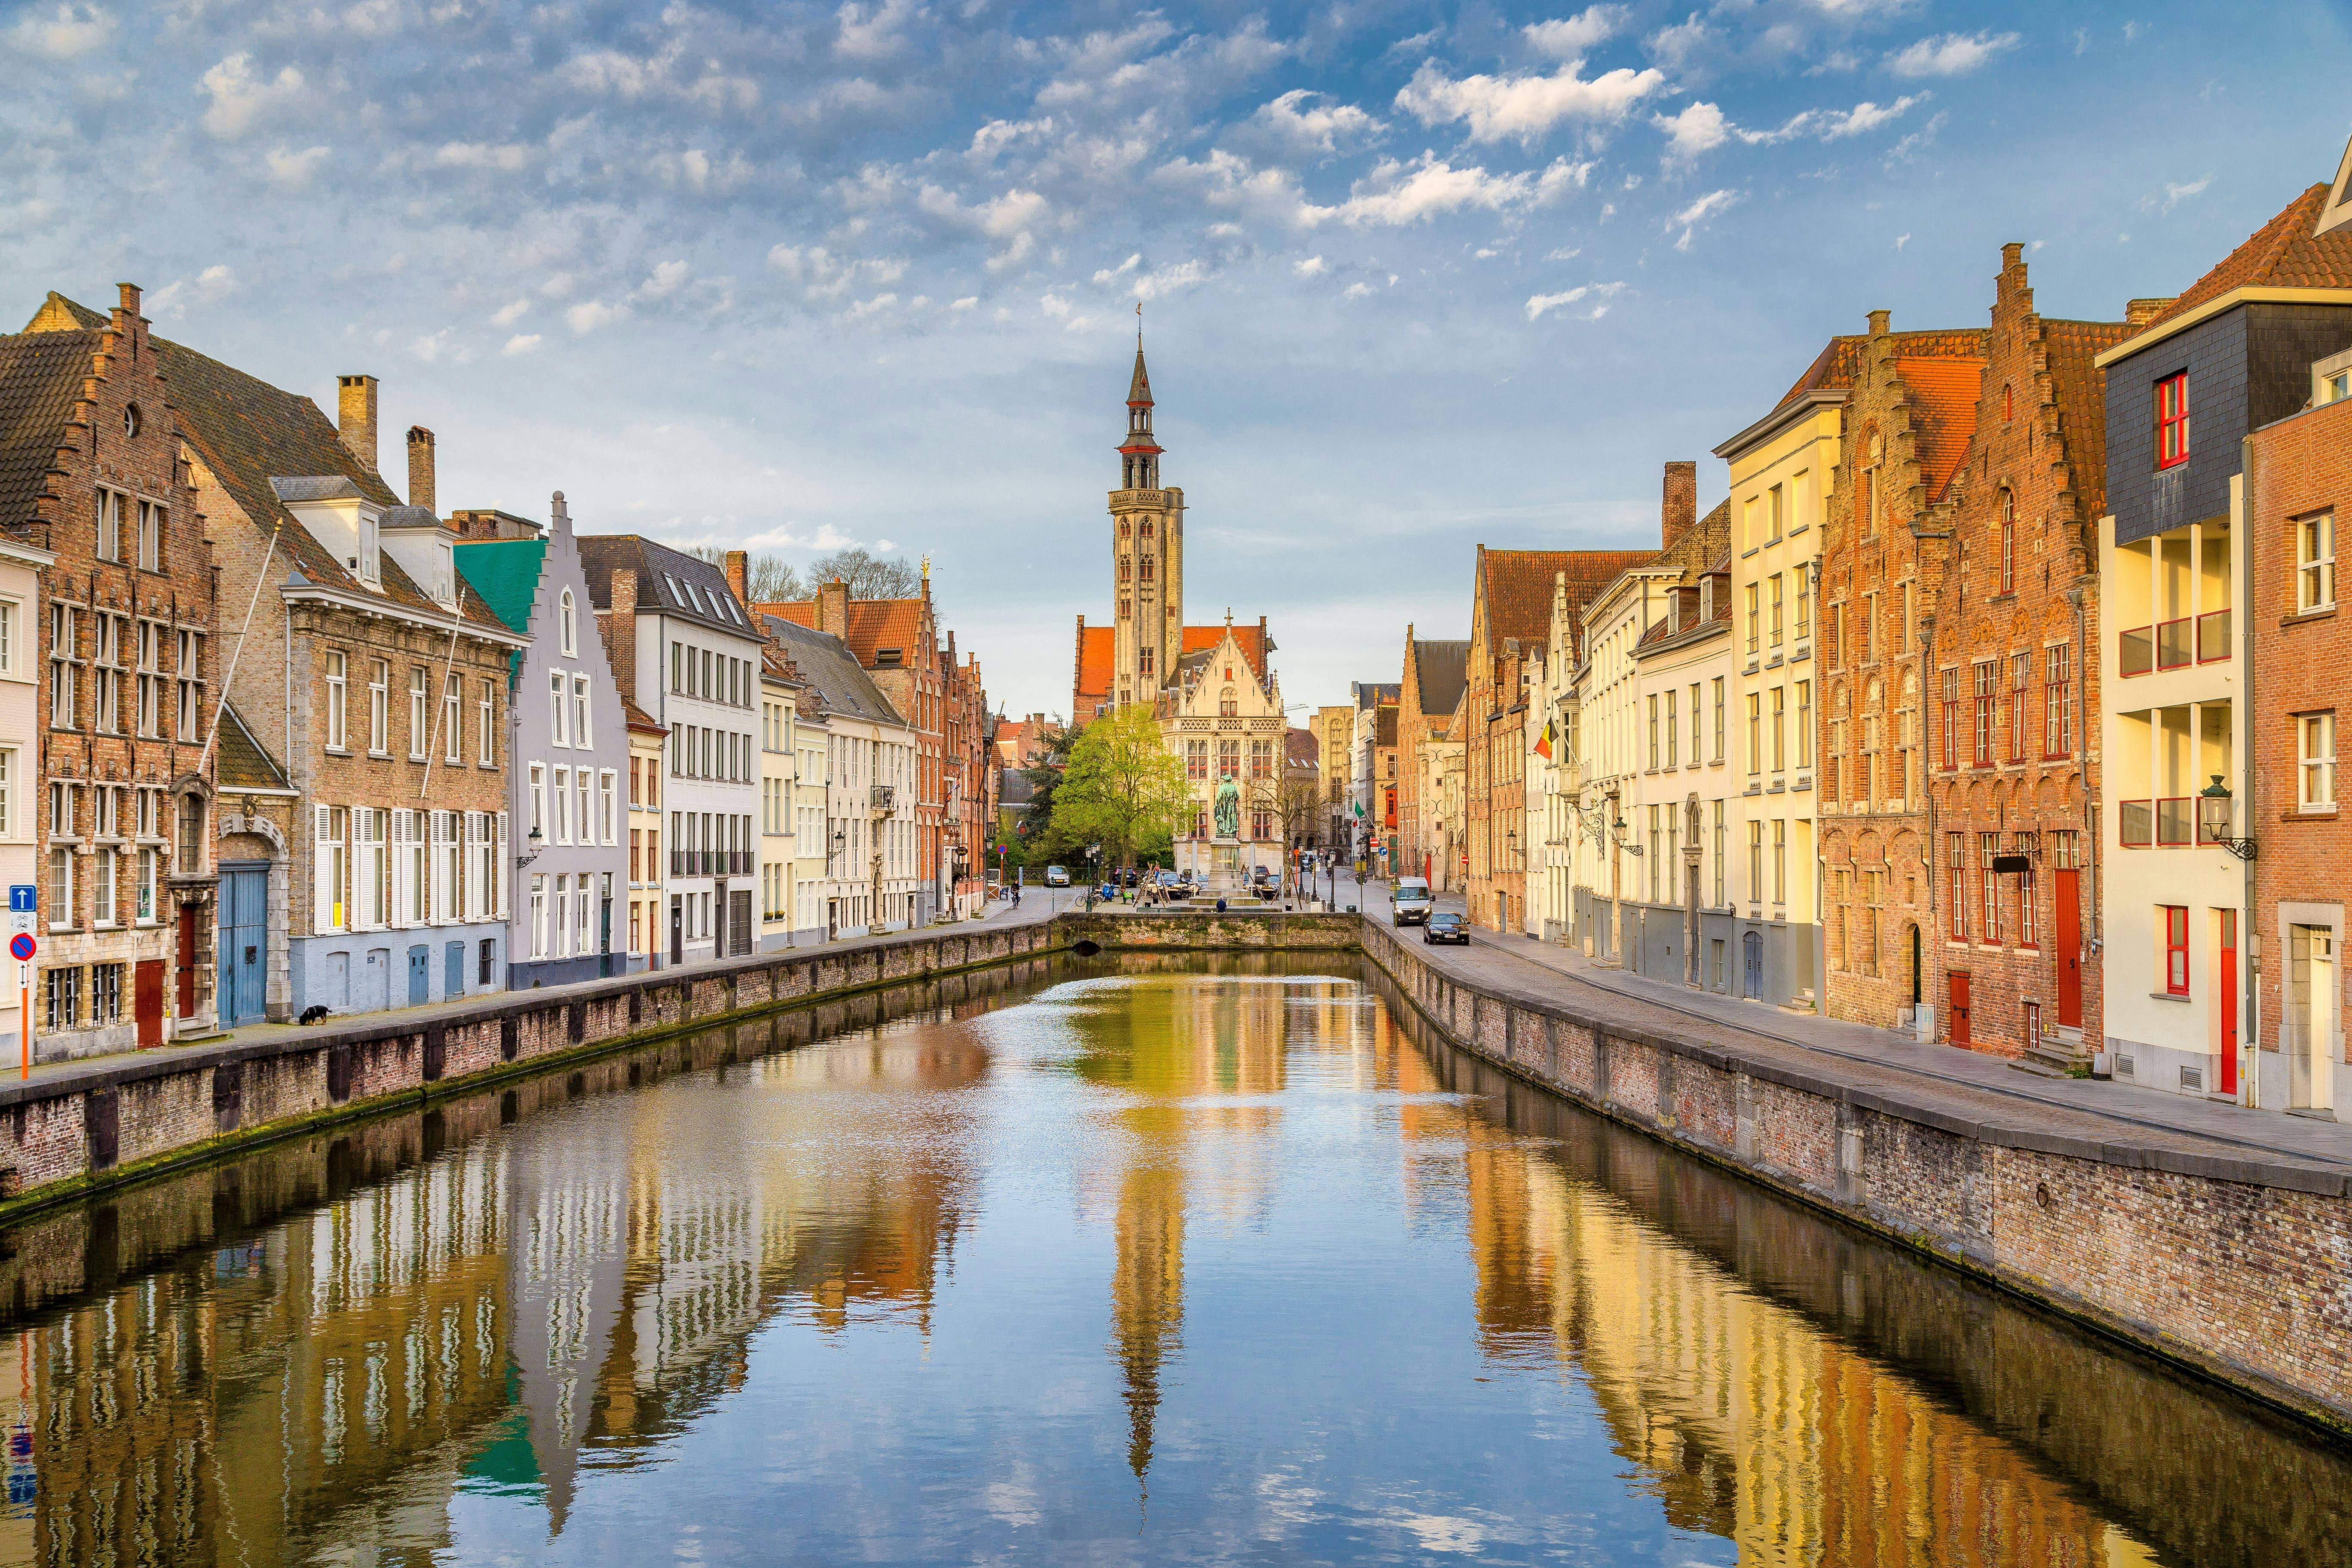 Escape Tour zelfgeleid, interactief stadsspel in Brugge